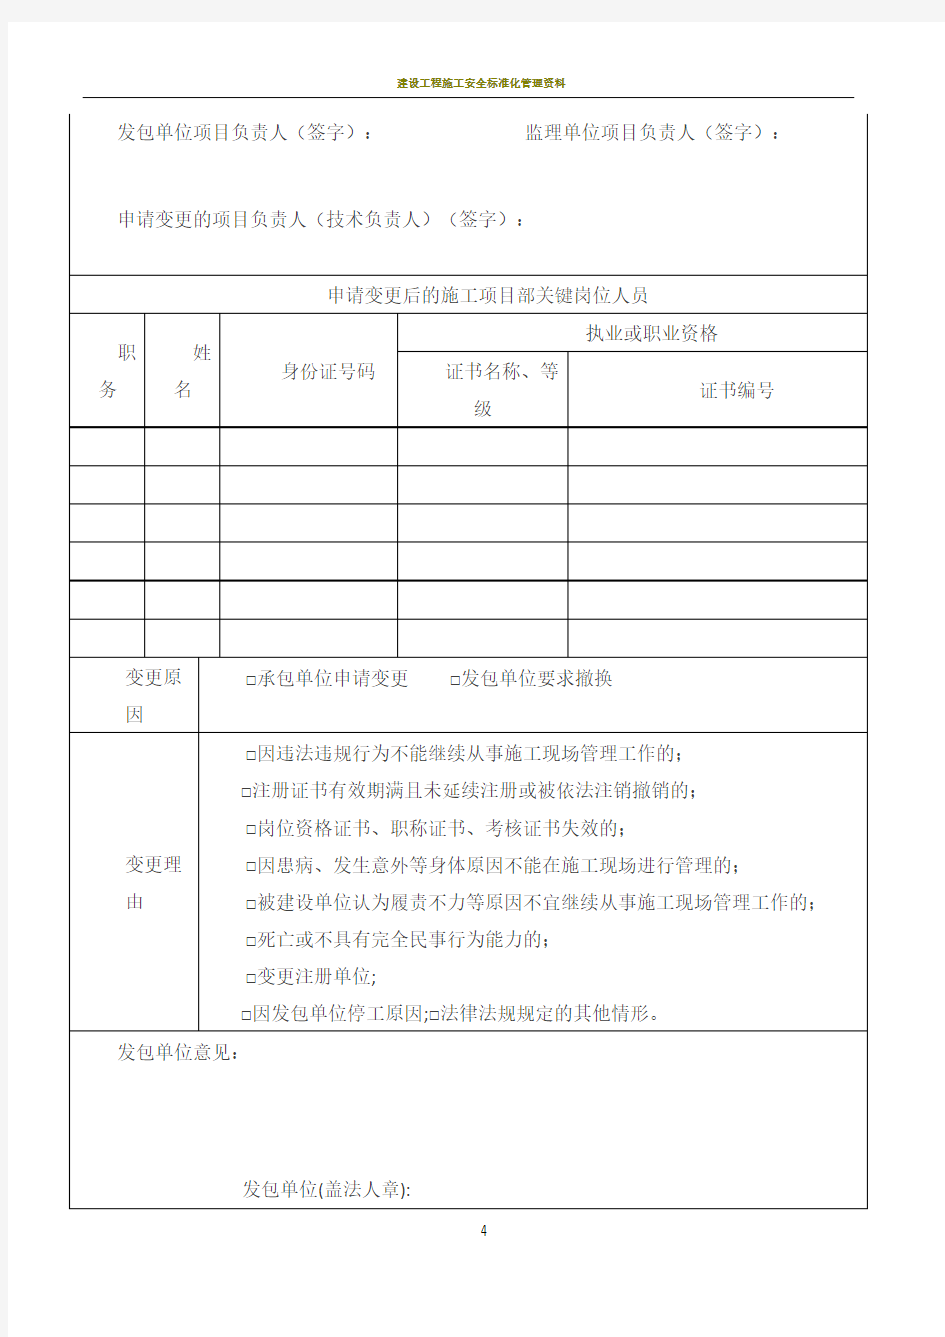 江苏省建设工程施工项目部关键岗位人员变更申请表